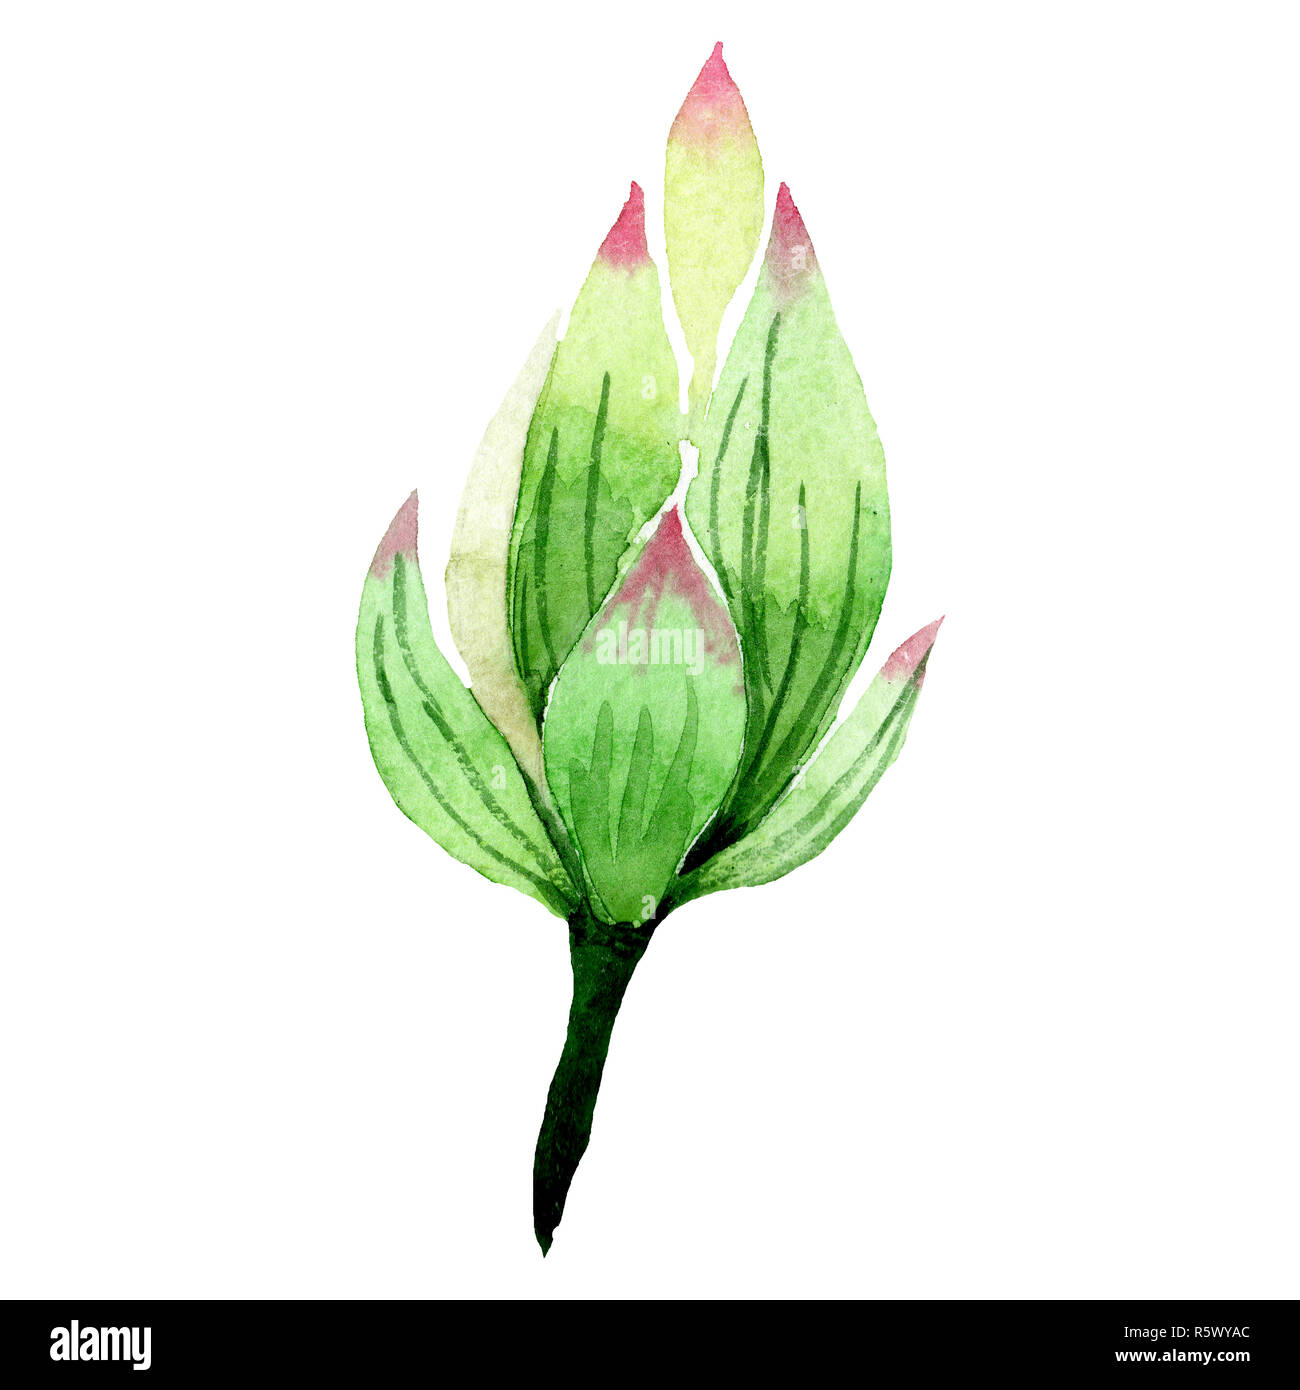 White lotus bud. Floral botanical flower. Watercolor background illustration set. Isolated bud illustration element. Stock Photo